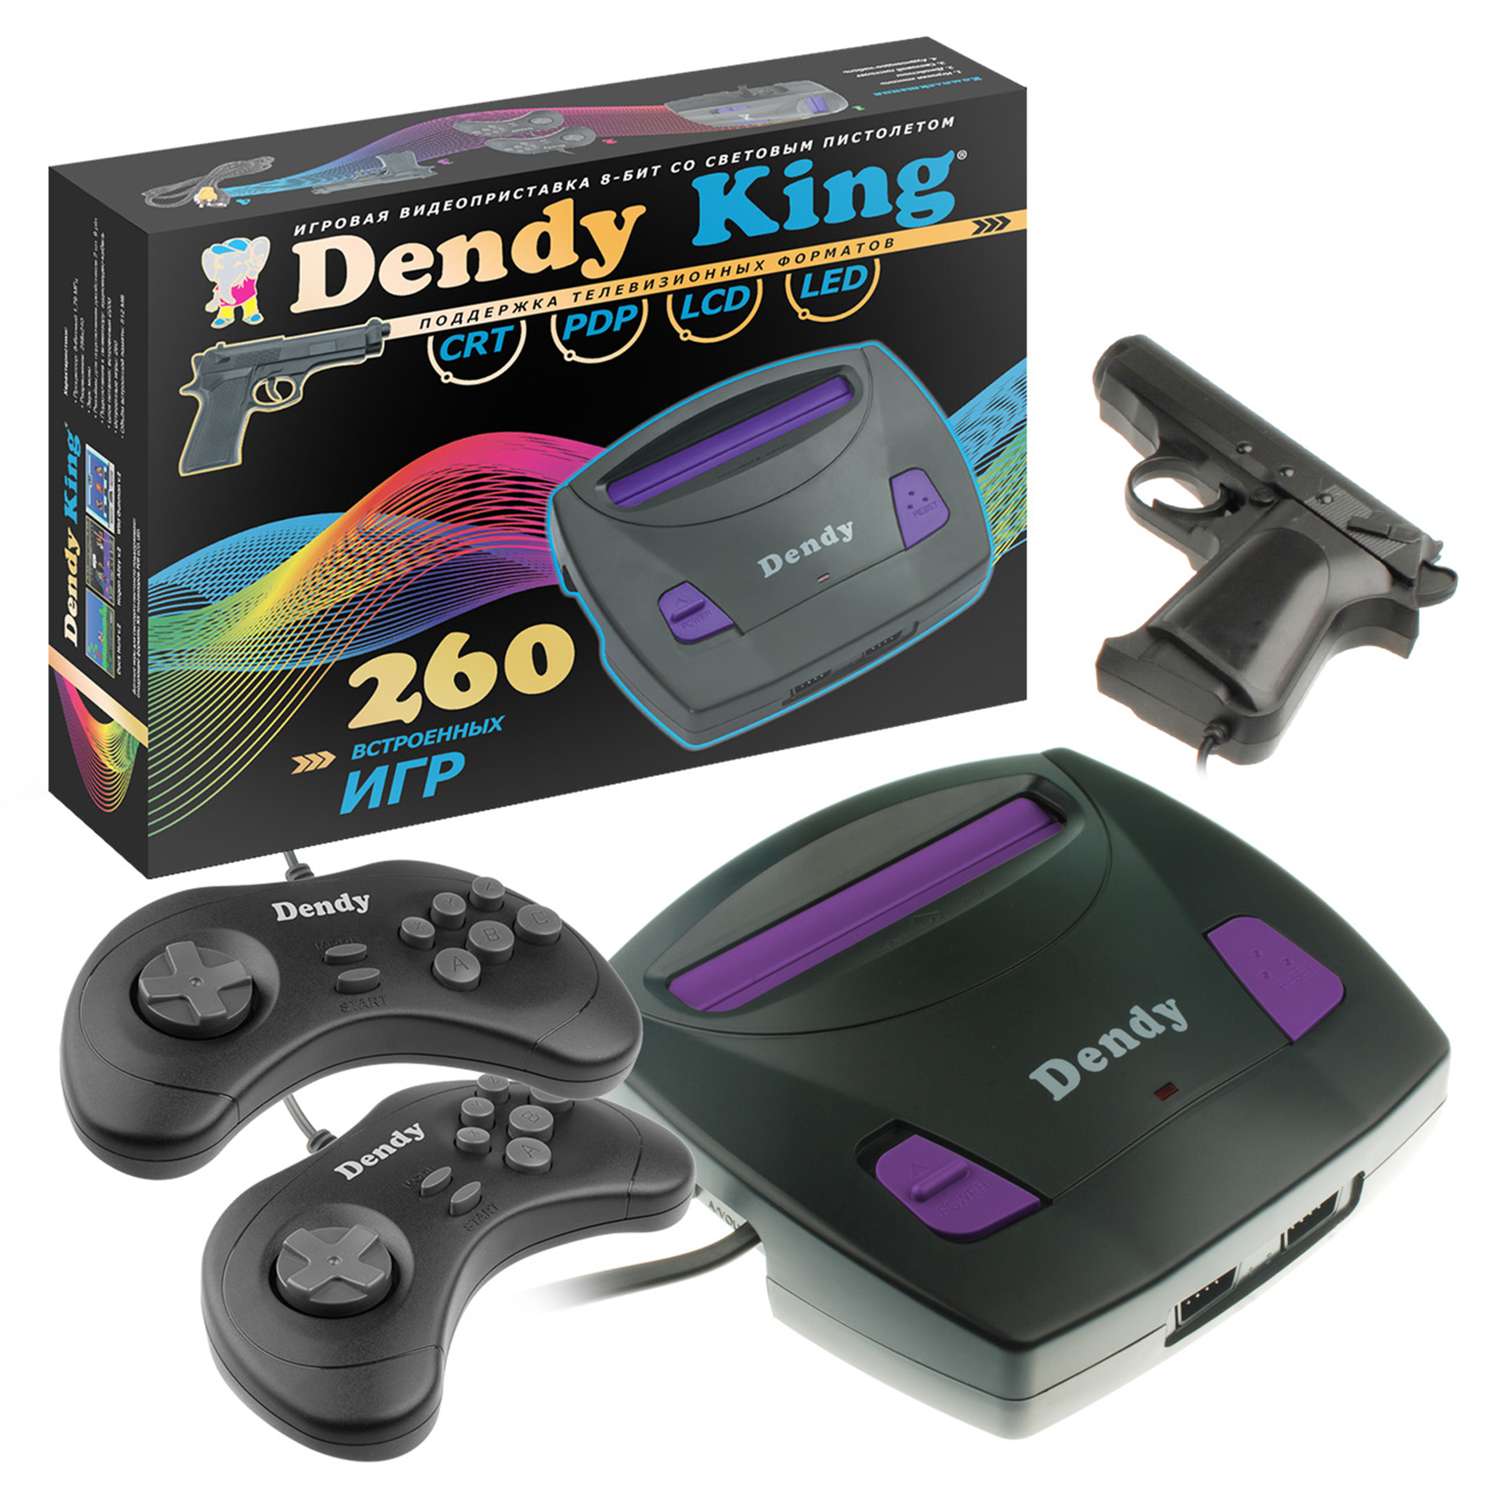 Игровая приставка Dendy King 260 игр (8-бит) со световым пистолетом - фото 17